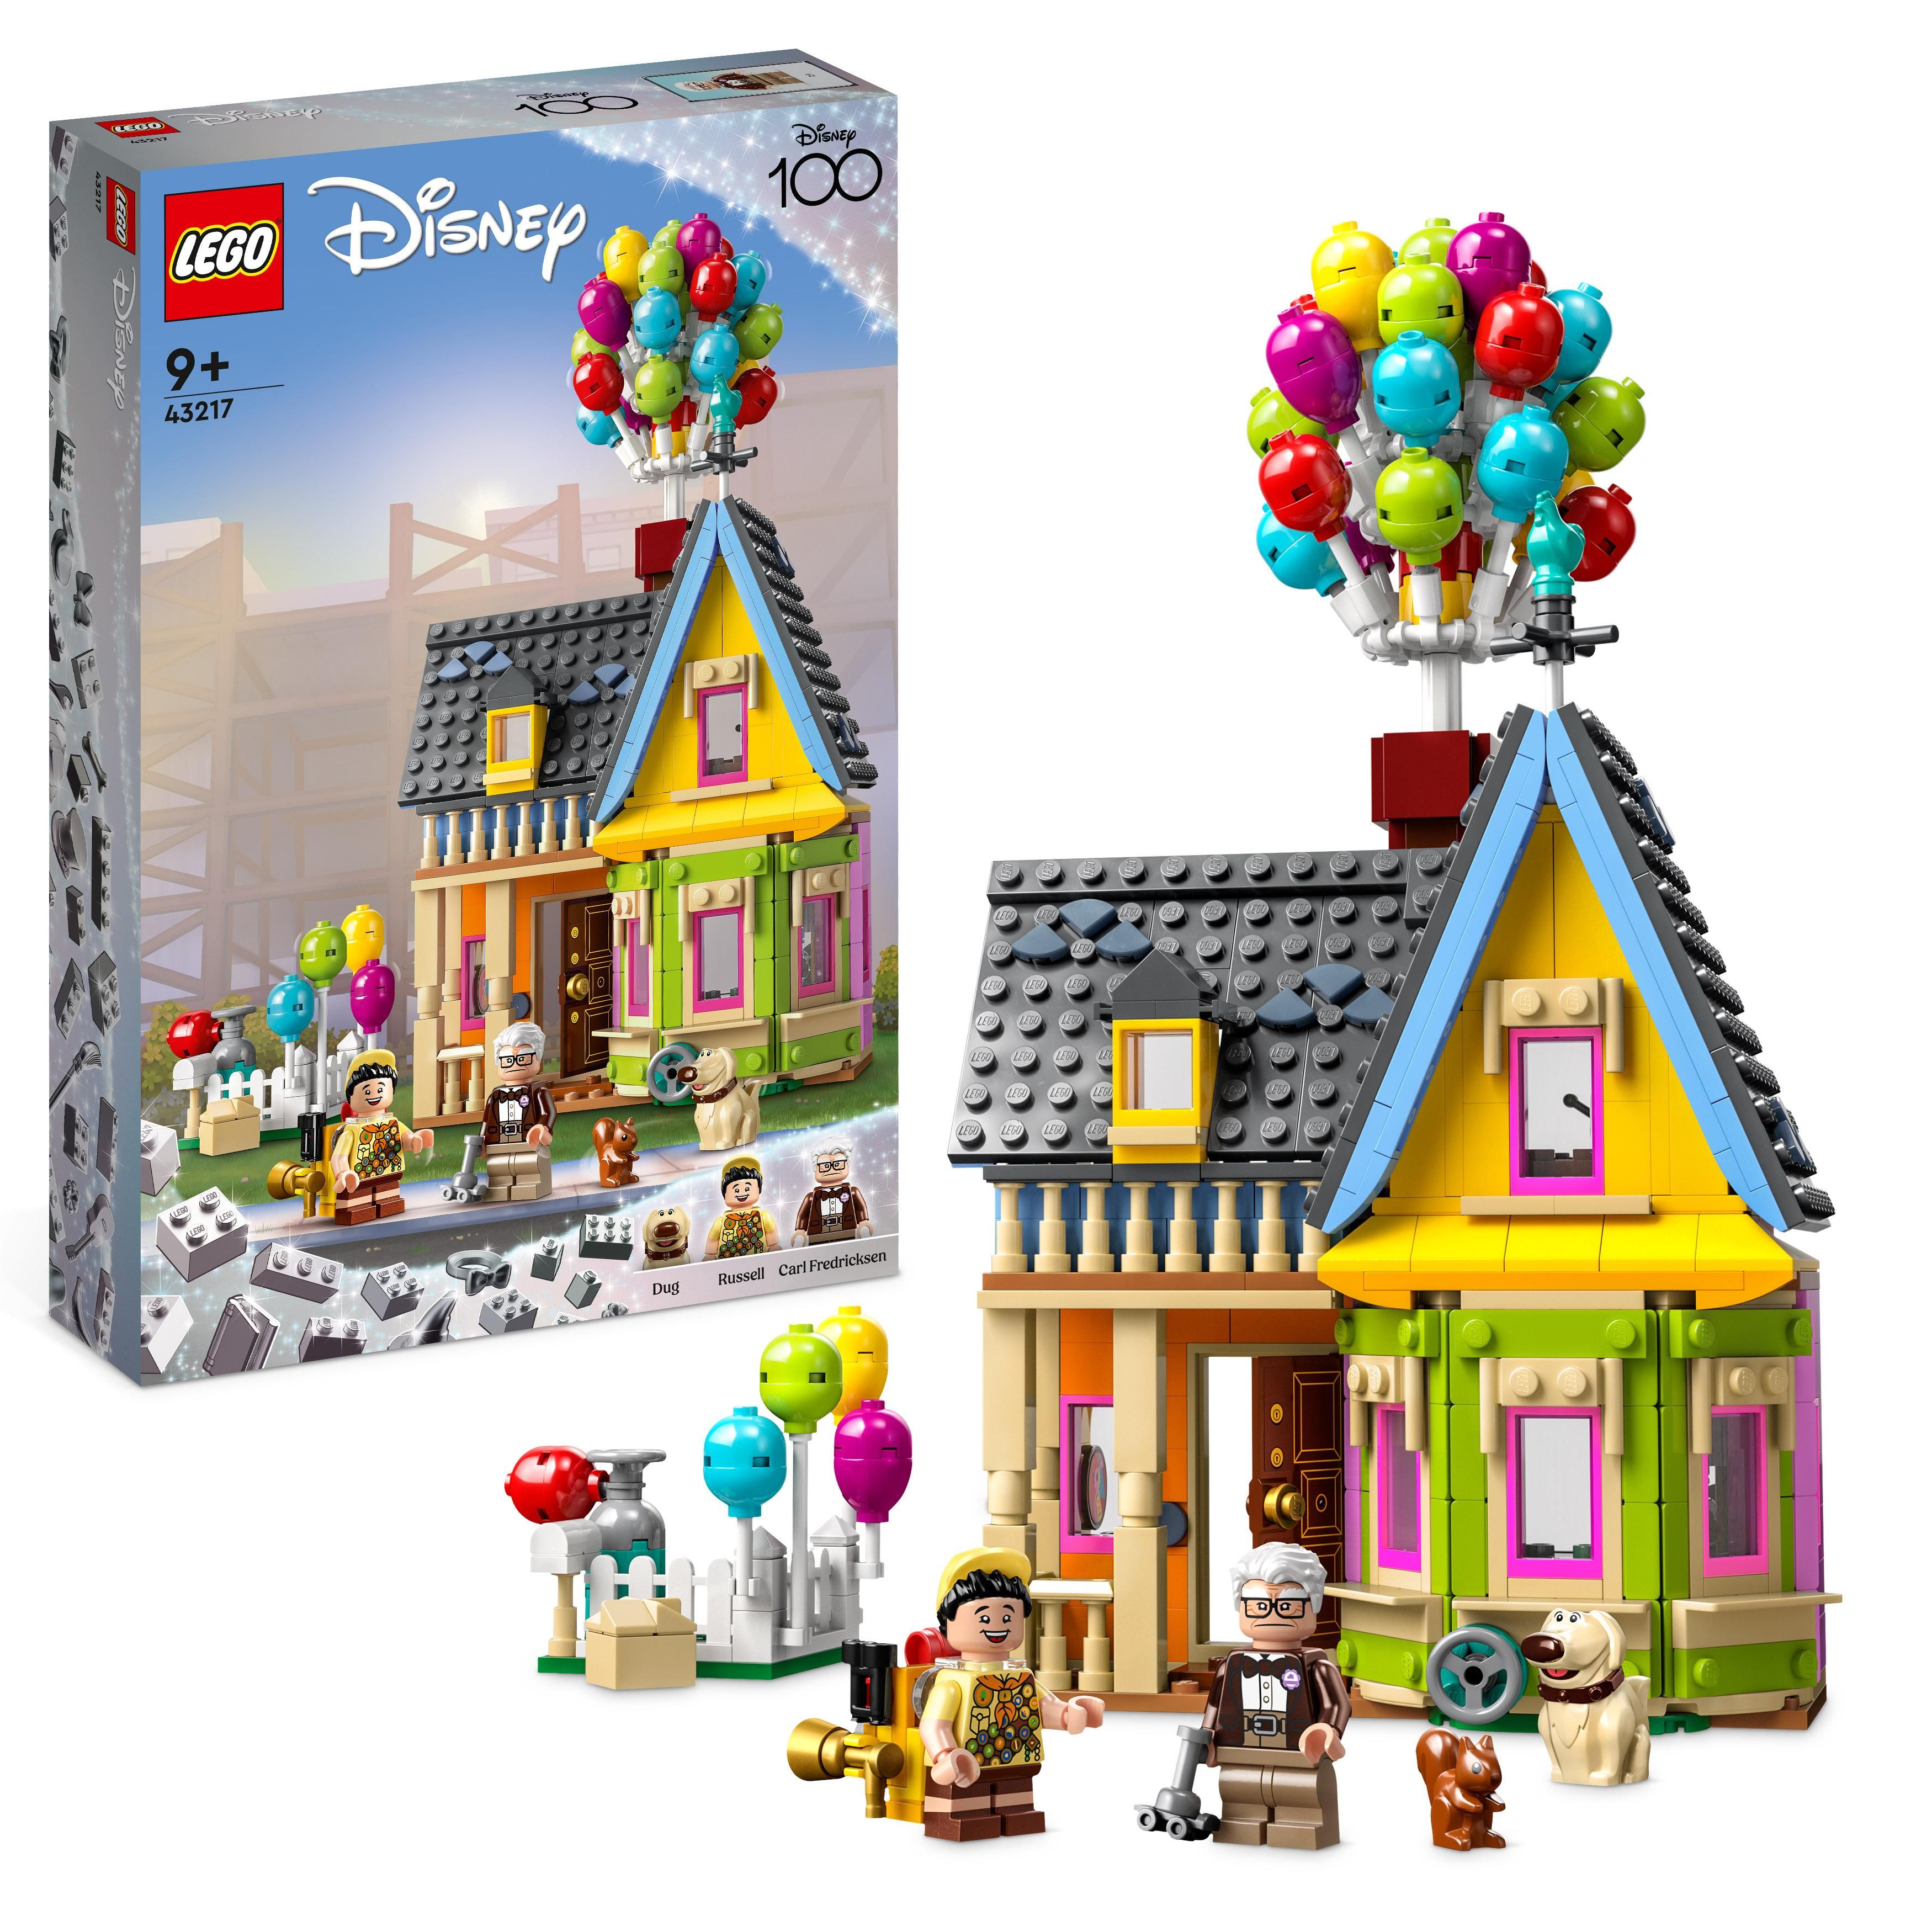 LEGO Disney - Huset fra«Se opp» (43217) - Leker